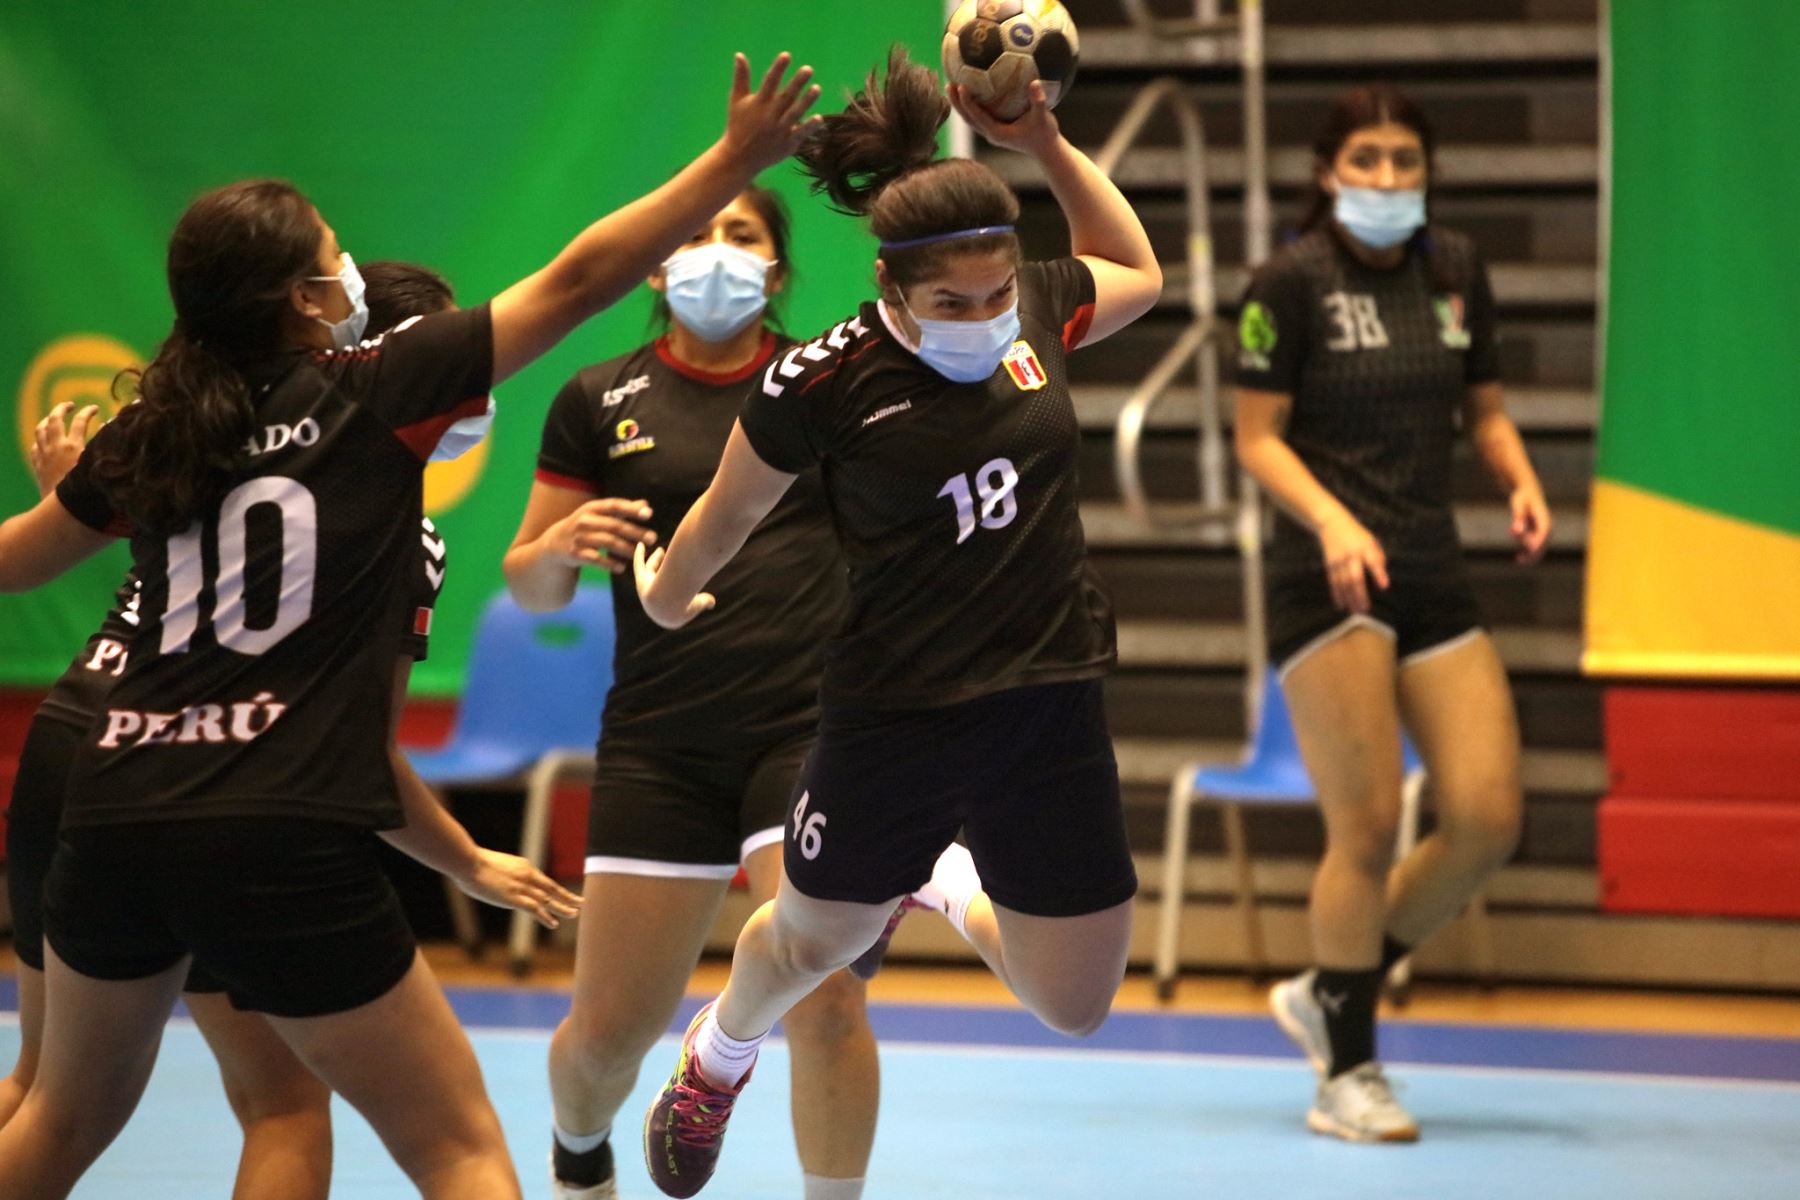 La jugadoras de handball pertenecen al grupo de deportistas priorizados para el regreso a los entrenamientos presenciales